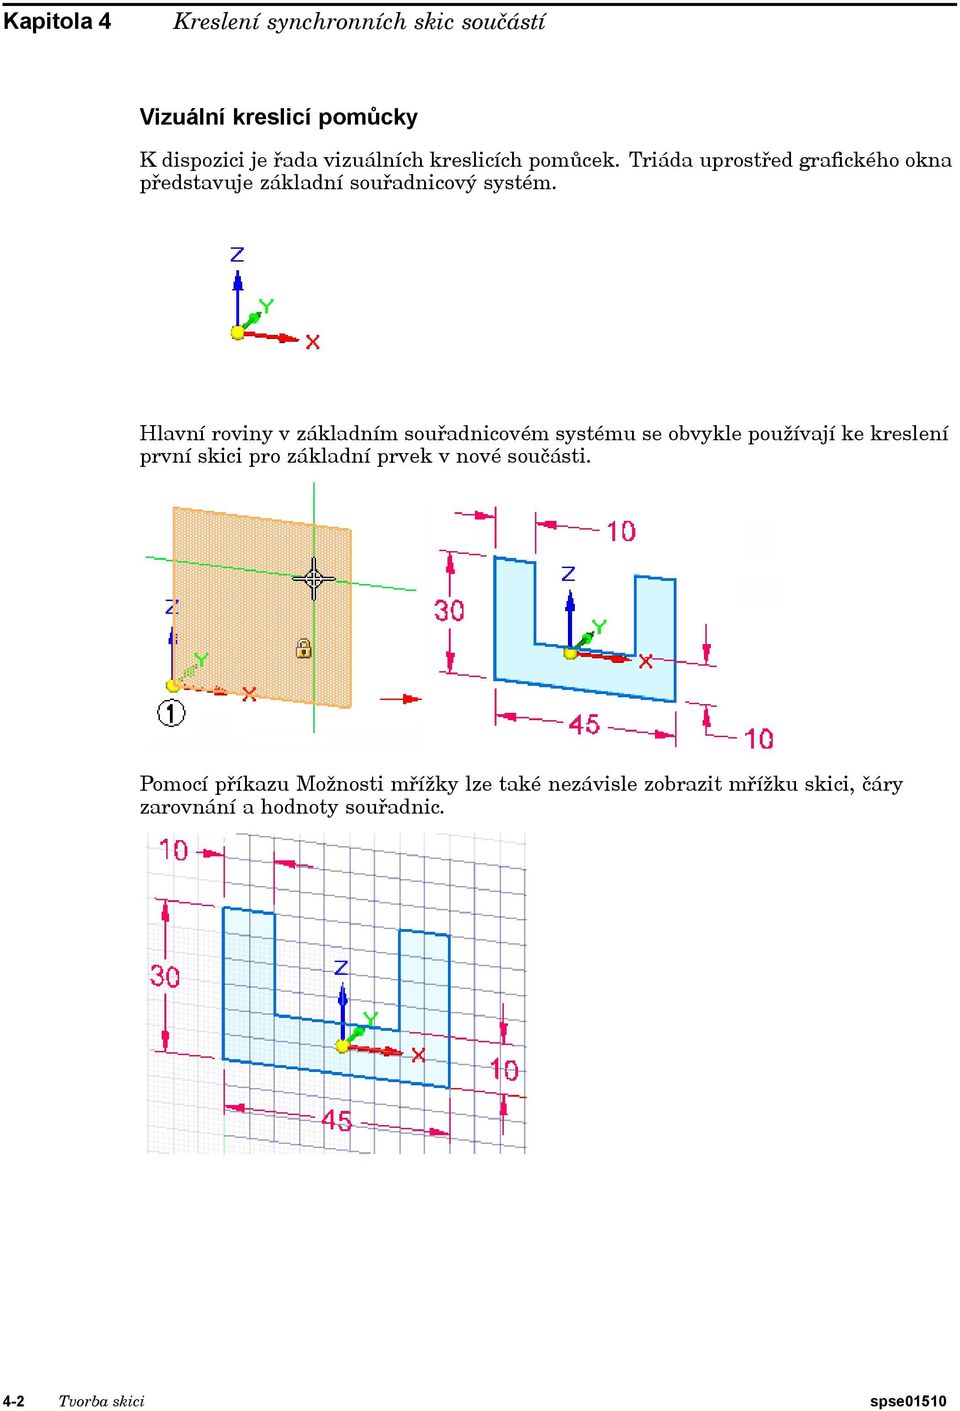 Hlavní roviny v základním souřadnicovém systému se obvykle používají ke kreslení první skici pro základní prvek v